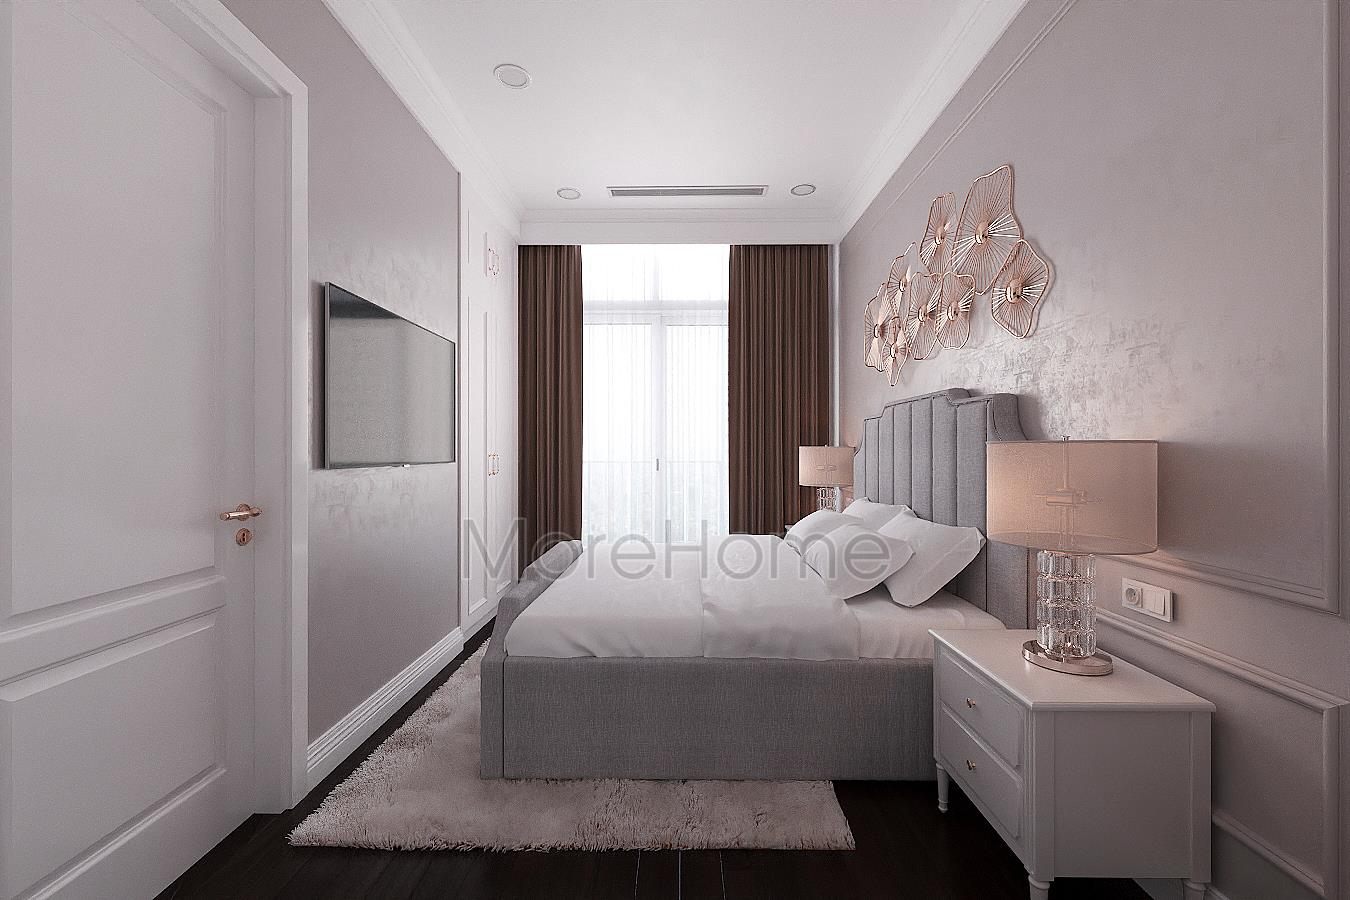 Thiết kế nội thất phòng ngủ cho căn hộ Pentshouse Keangnam 